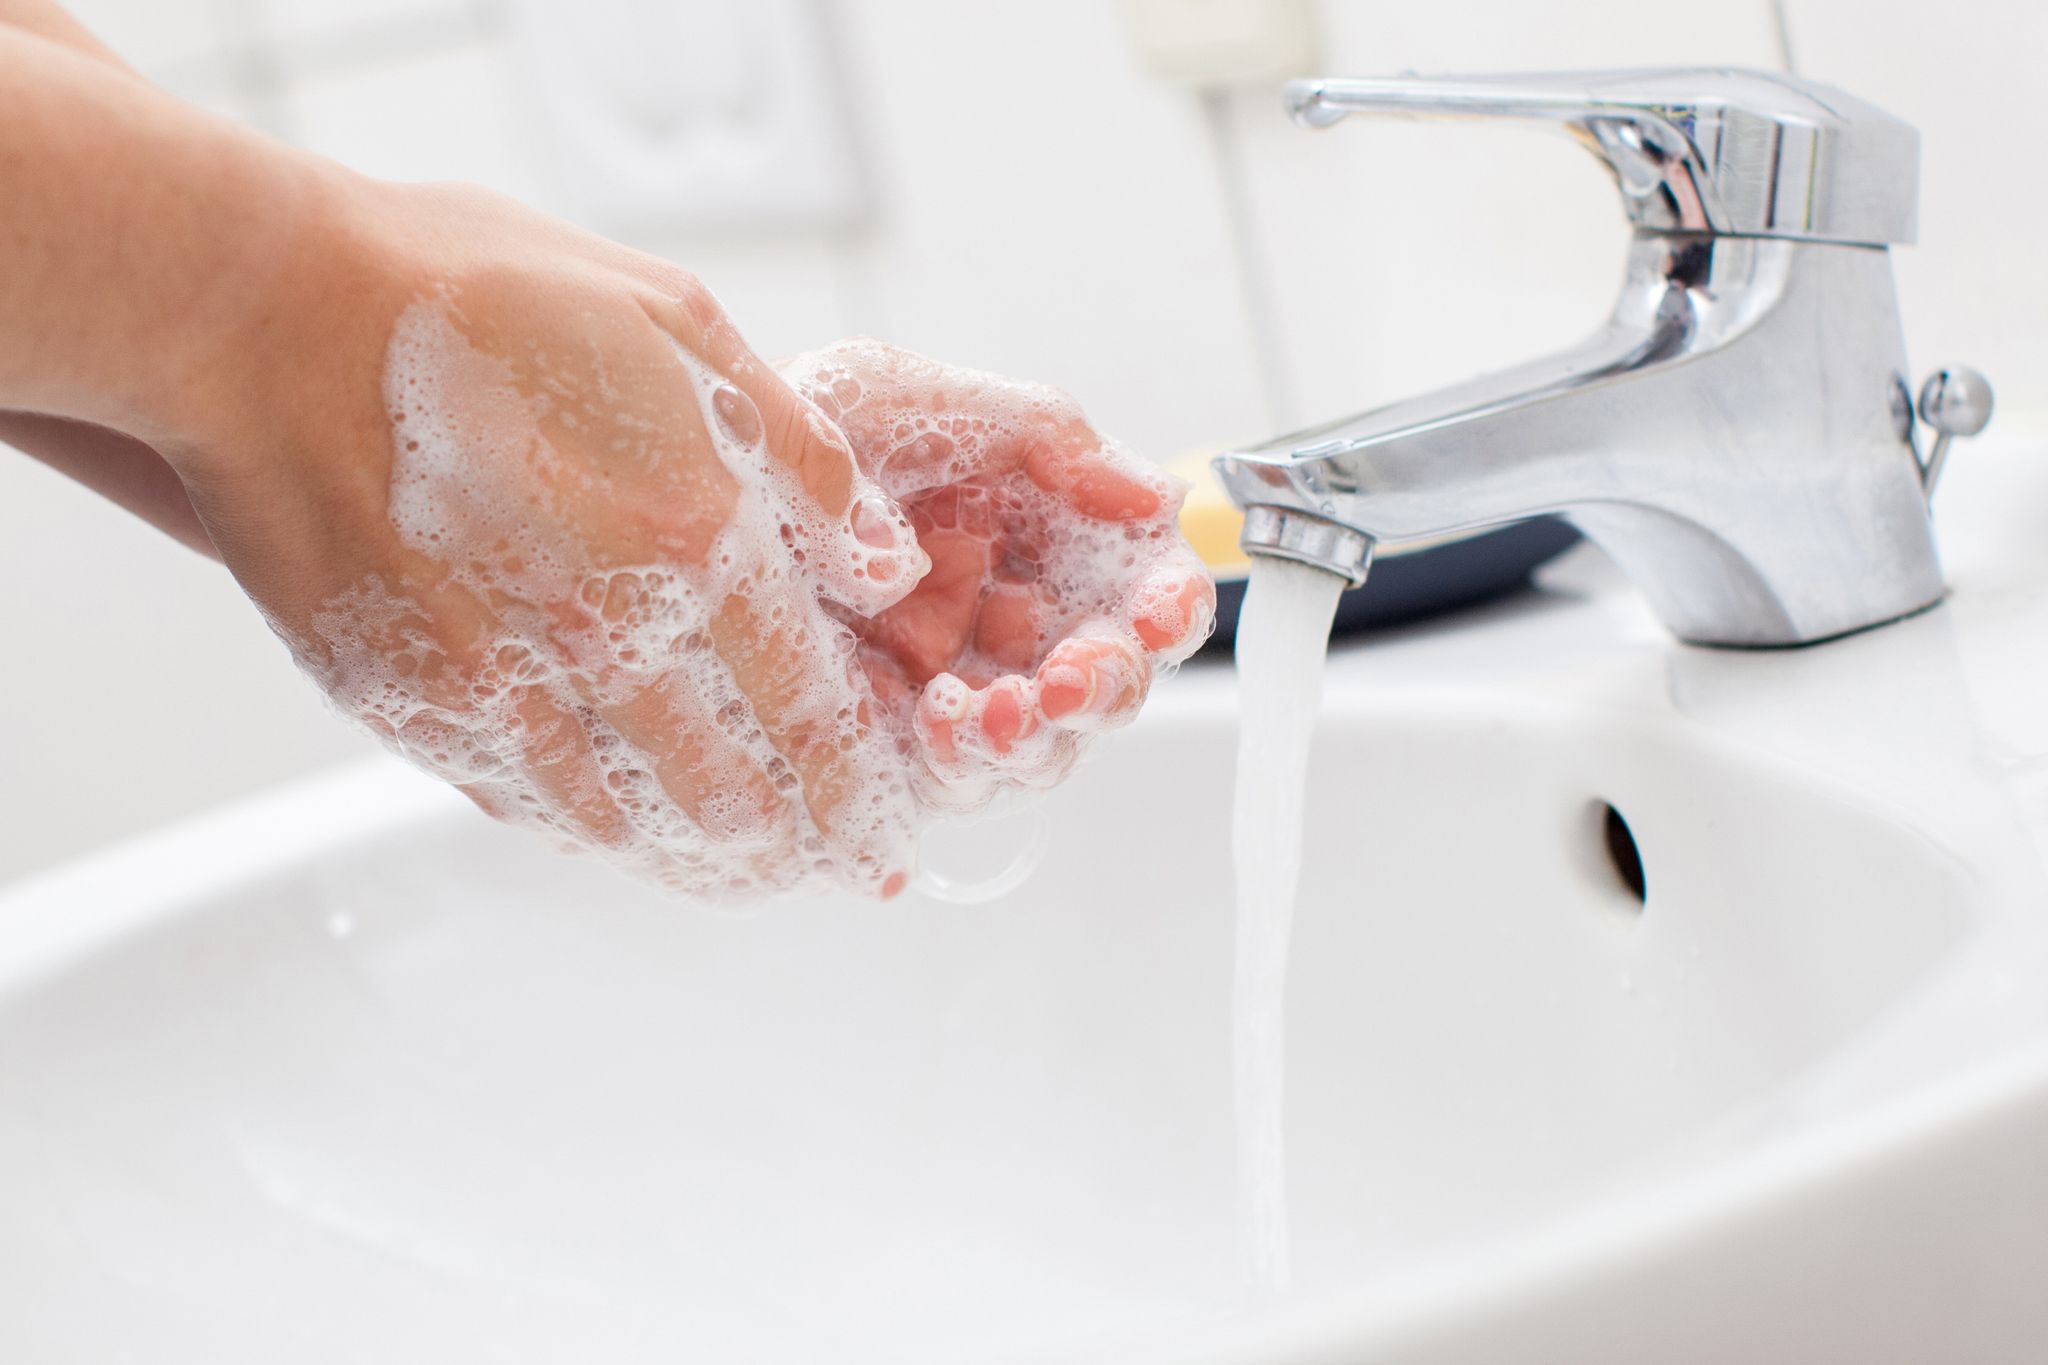 El lavado de manos frecuente y profundo con jabón contribuye una medida de higiene y salud (DPA)